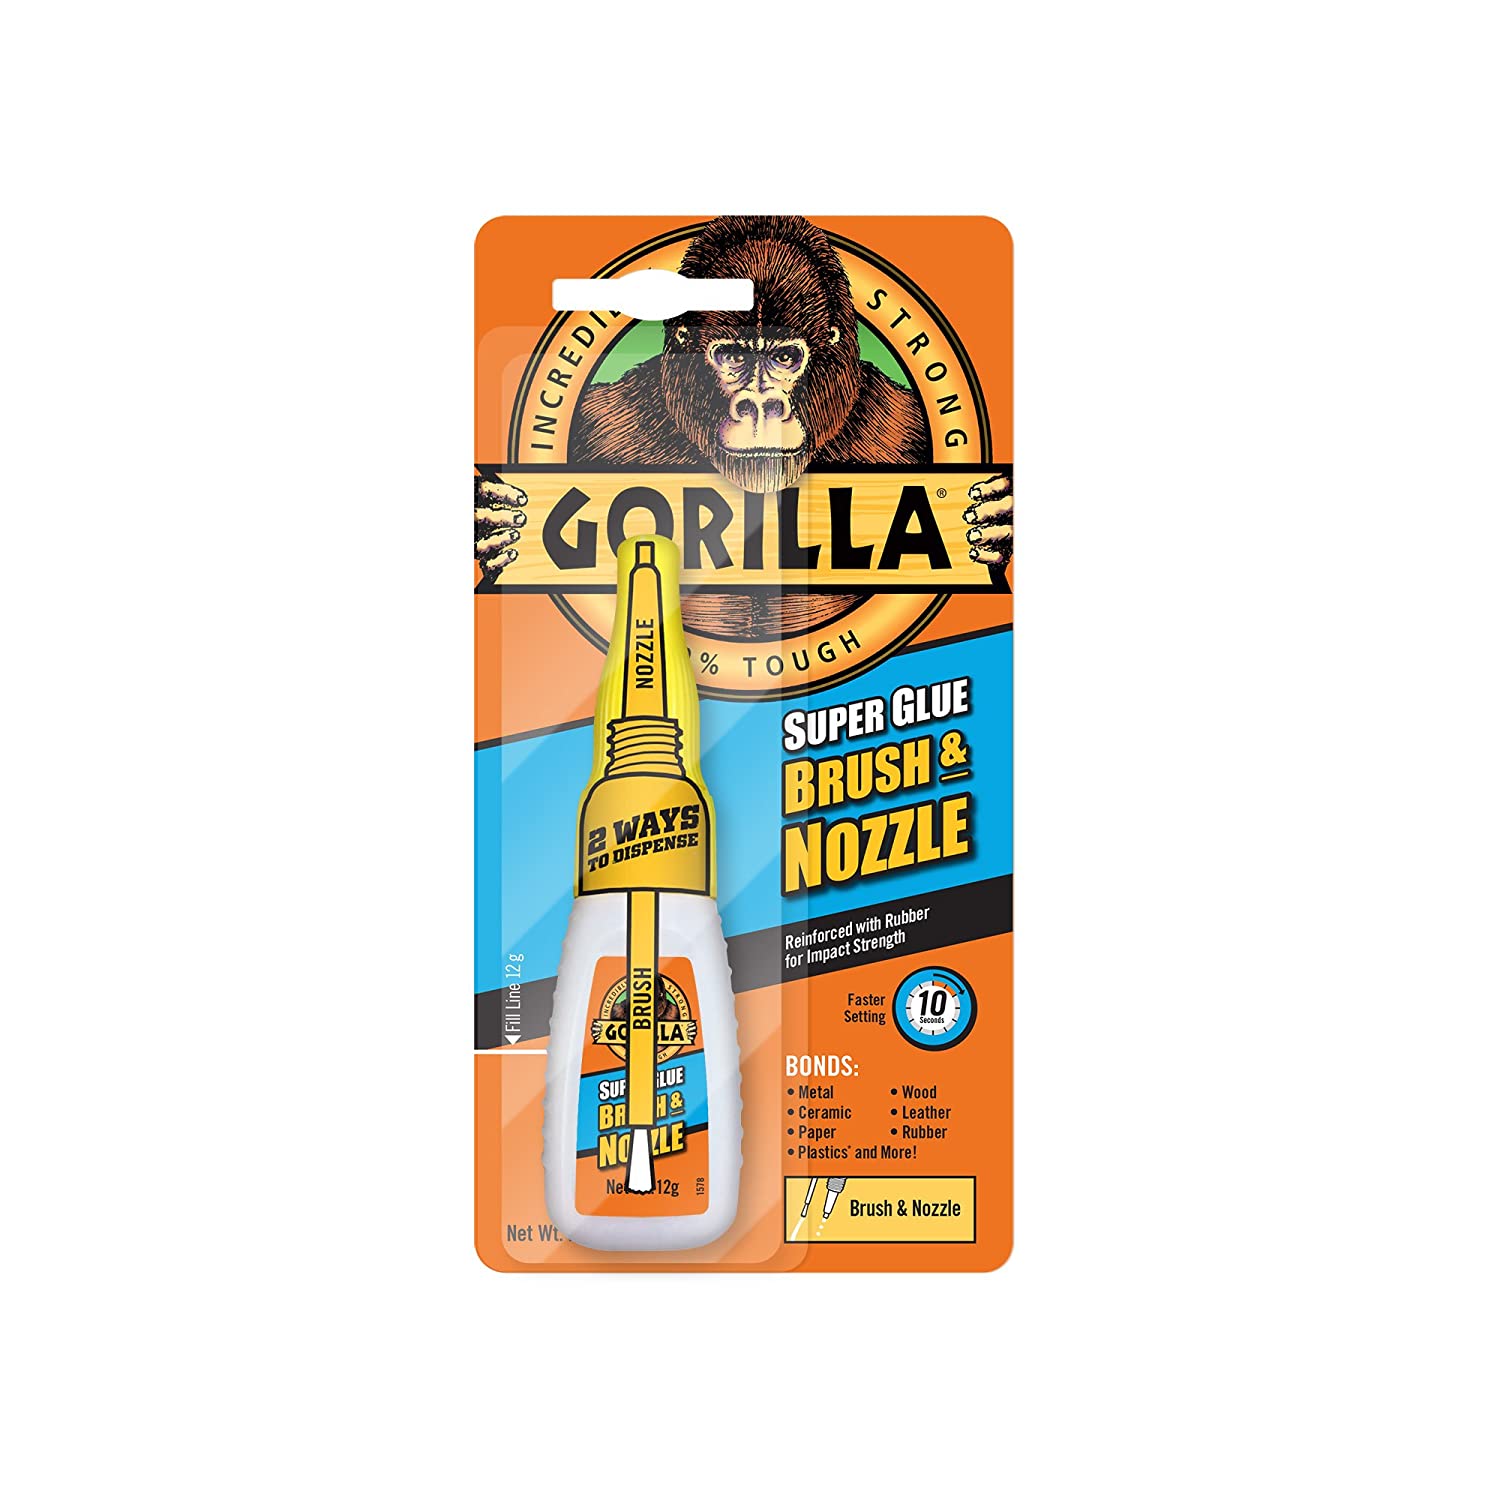 Gorilla Super Glue 2-in-1